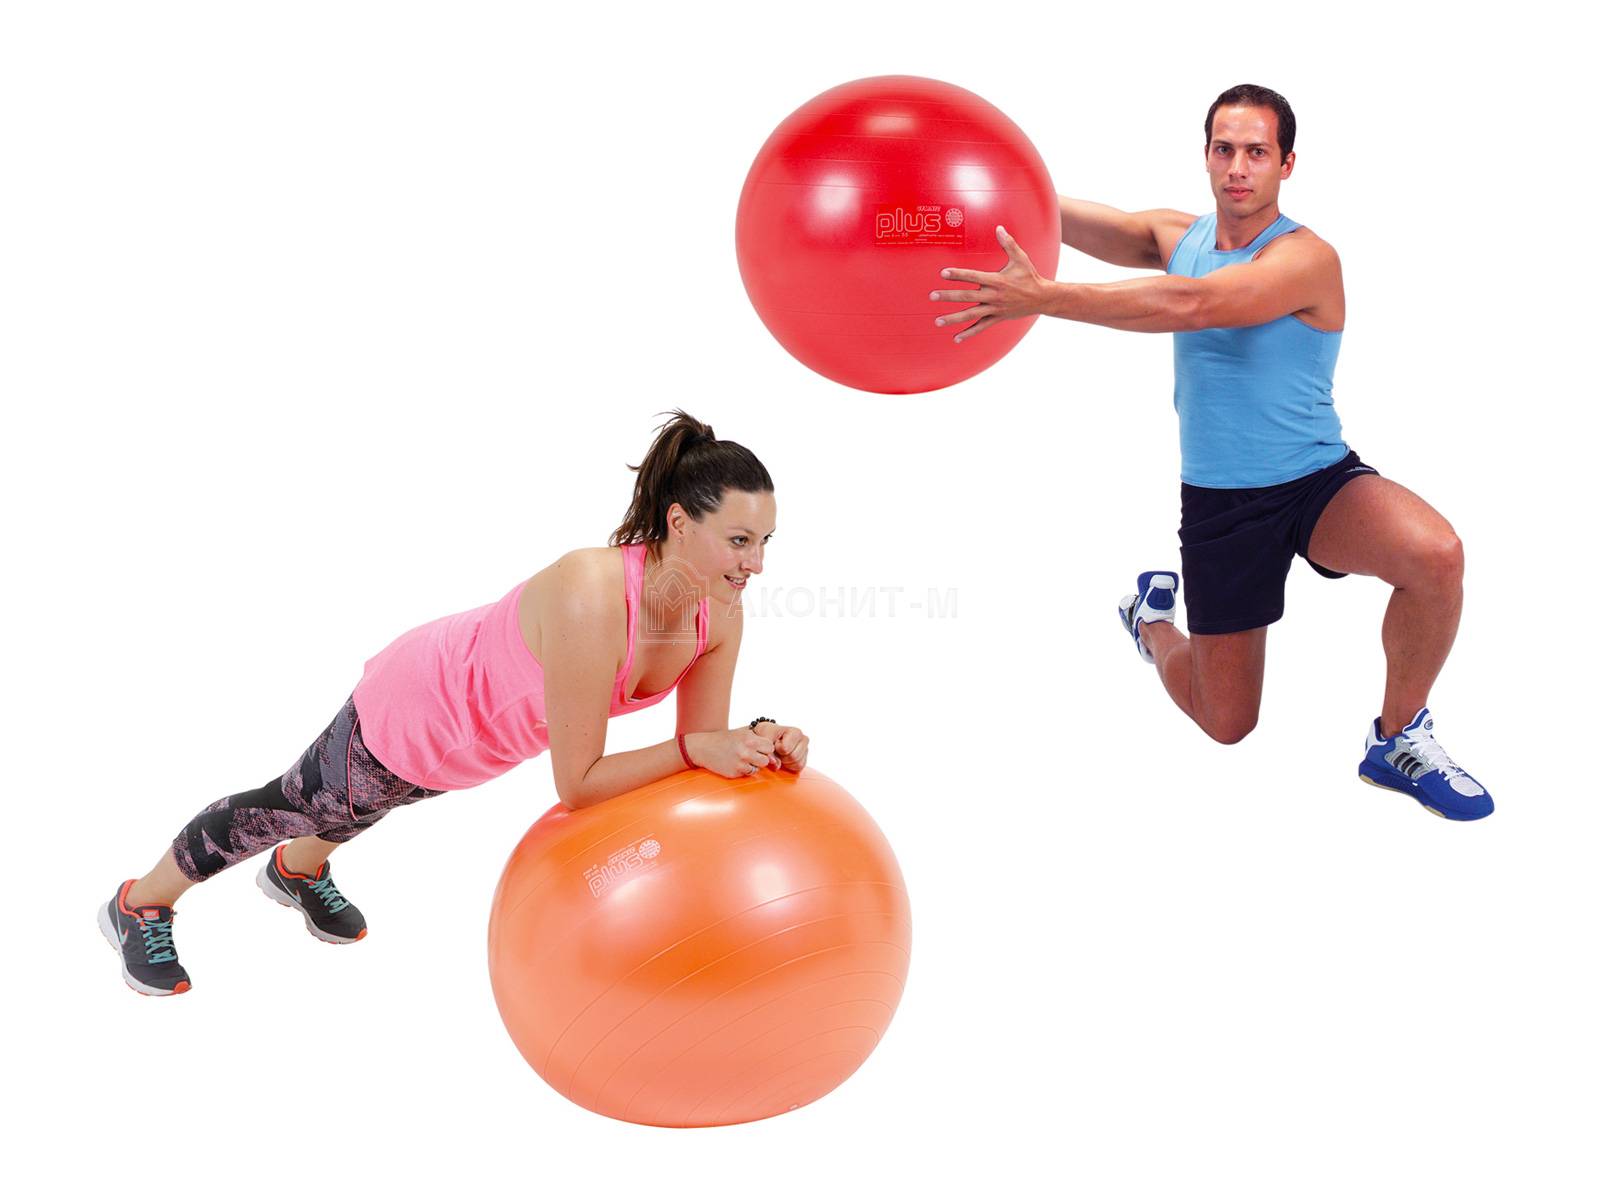 Мяч гимнастический для фитнеса "Гимник Плюс", синий, диам. 65 см